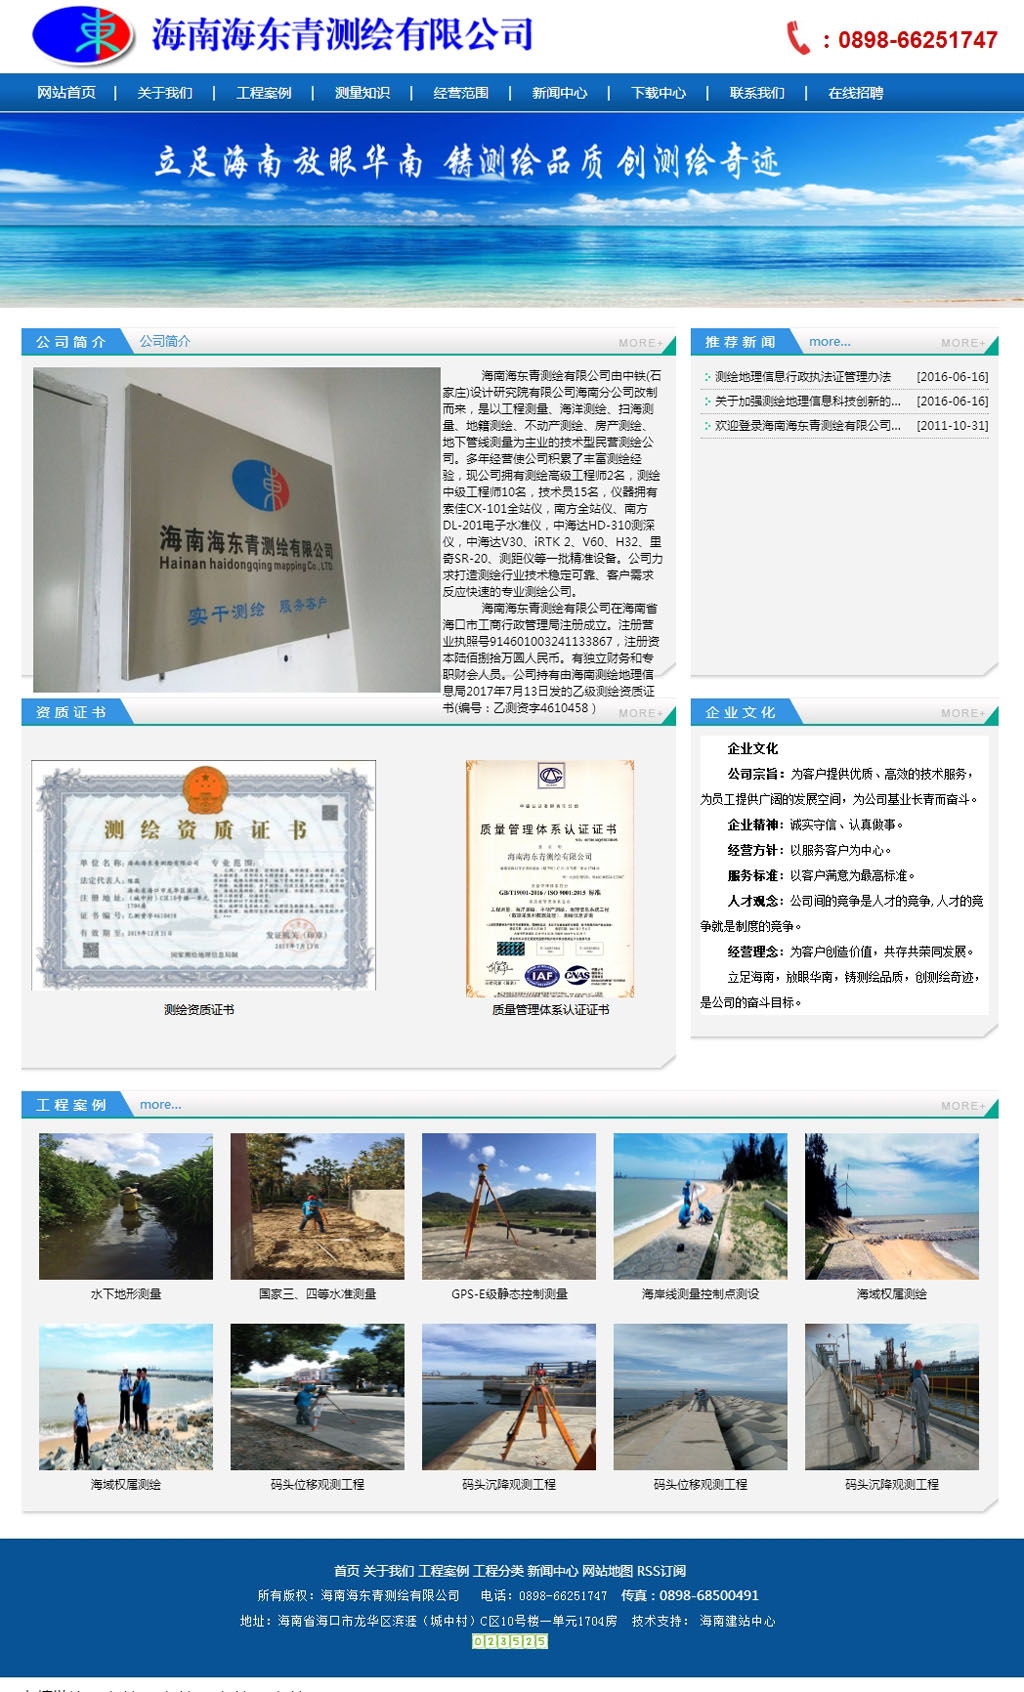 网站首页 --- 海南海东青测绘有限公司.jpg